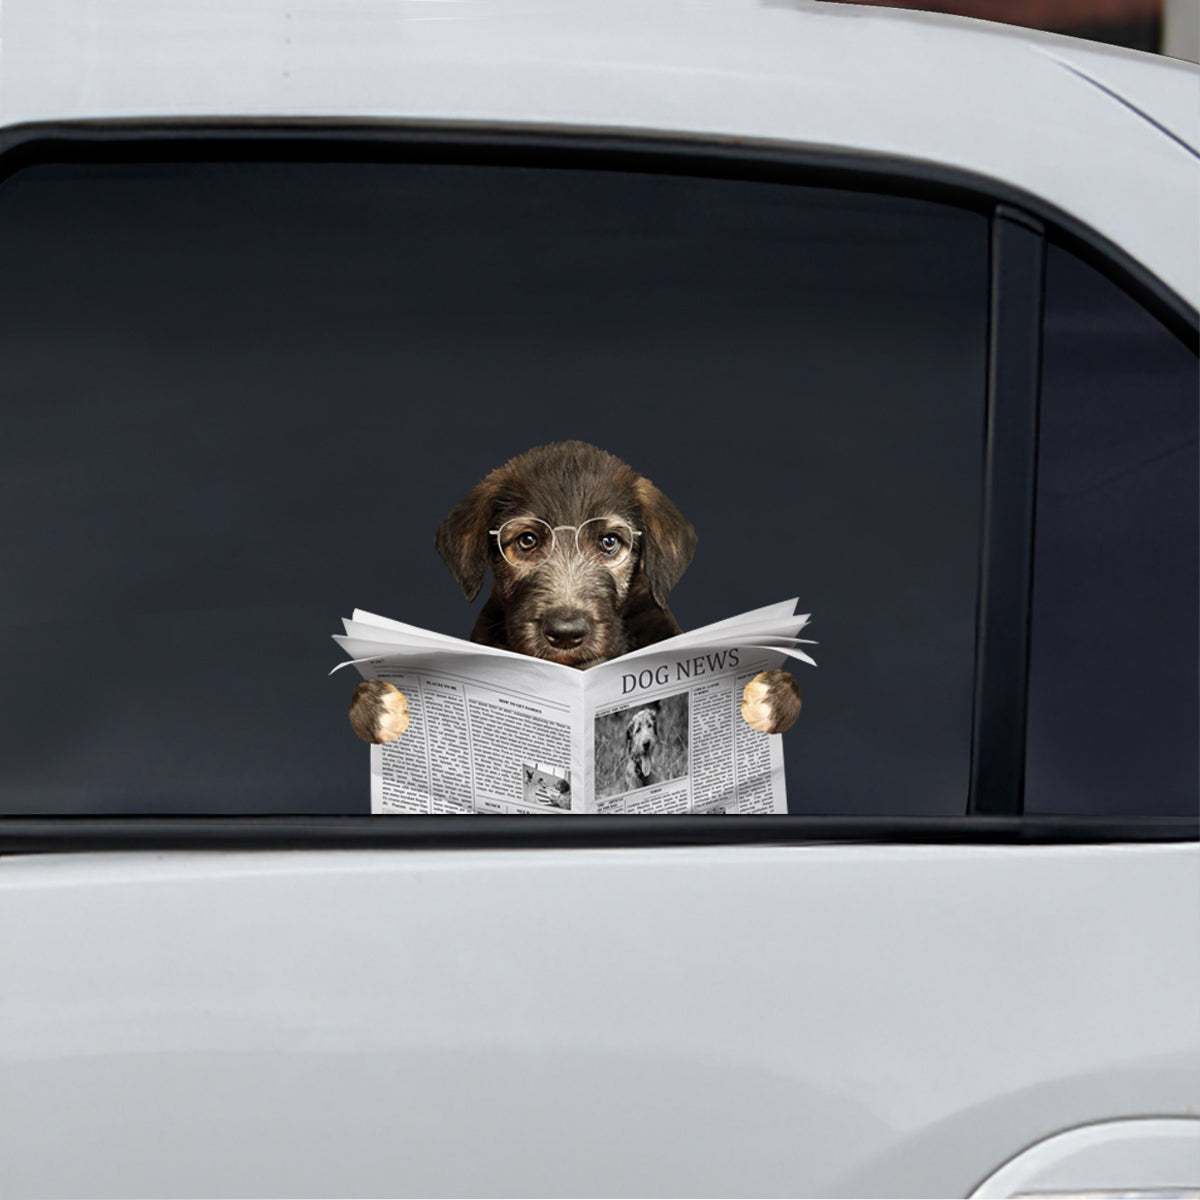 Avez-vous lu les nouvelles aujourd'hui - Irish Wolfhound Autocollant de voiture/porte/réfrigérateur/ordinateur portable V1